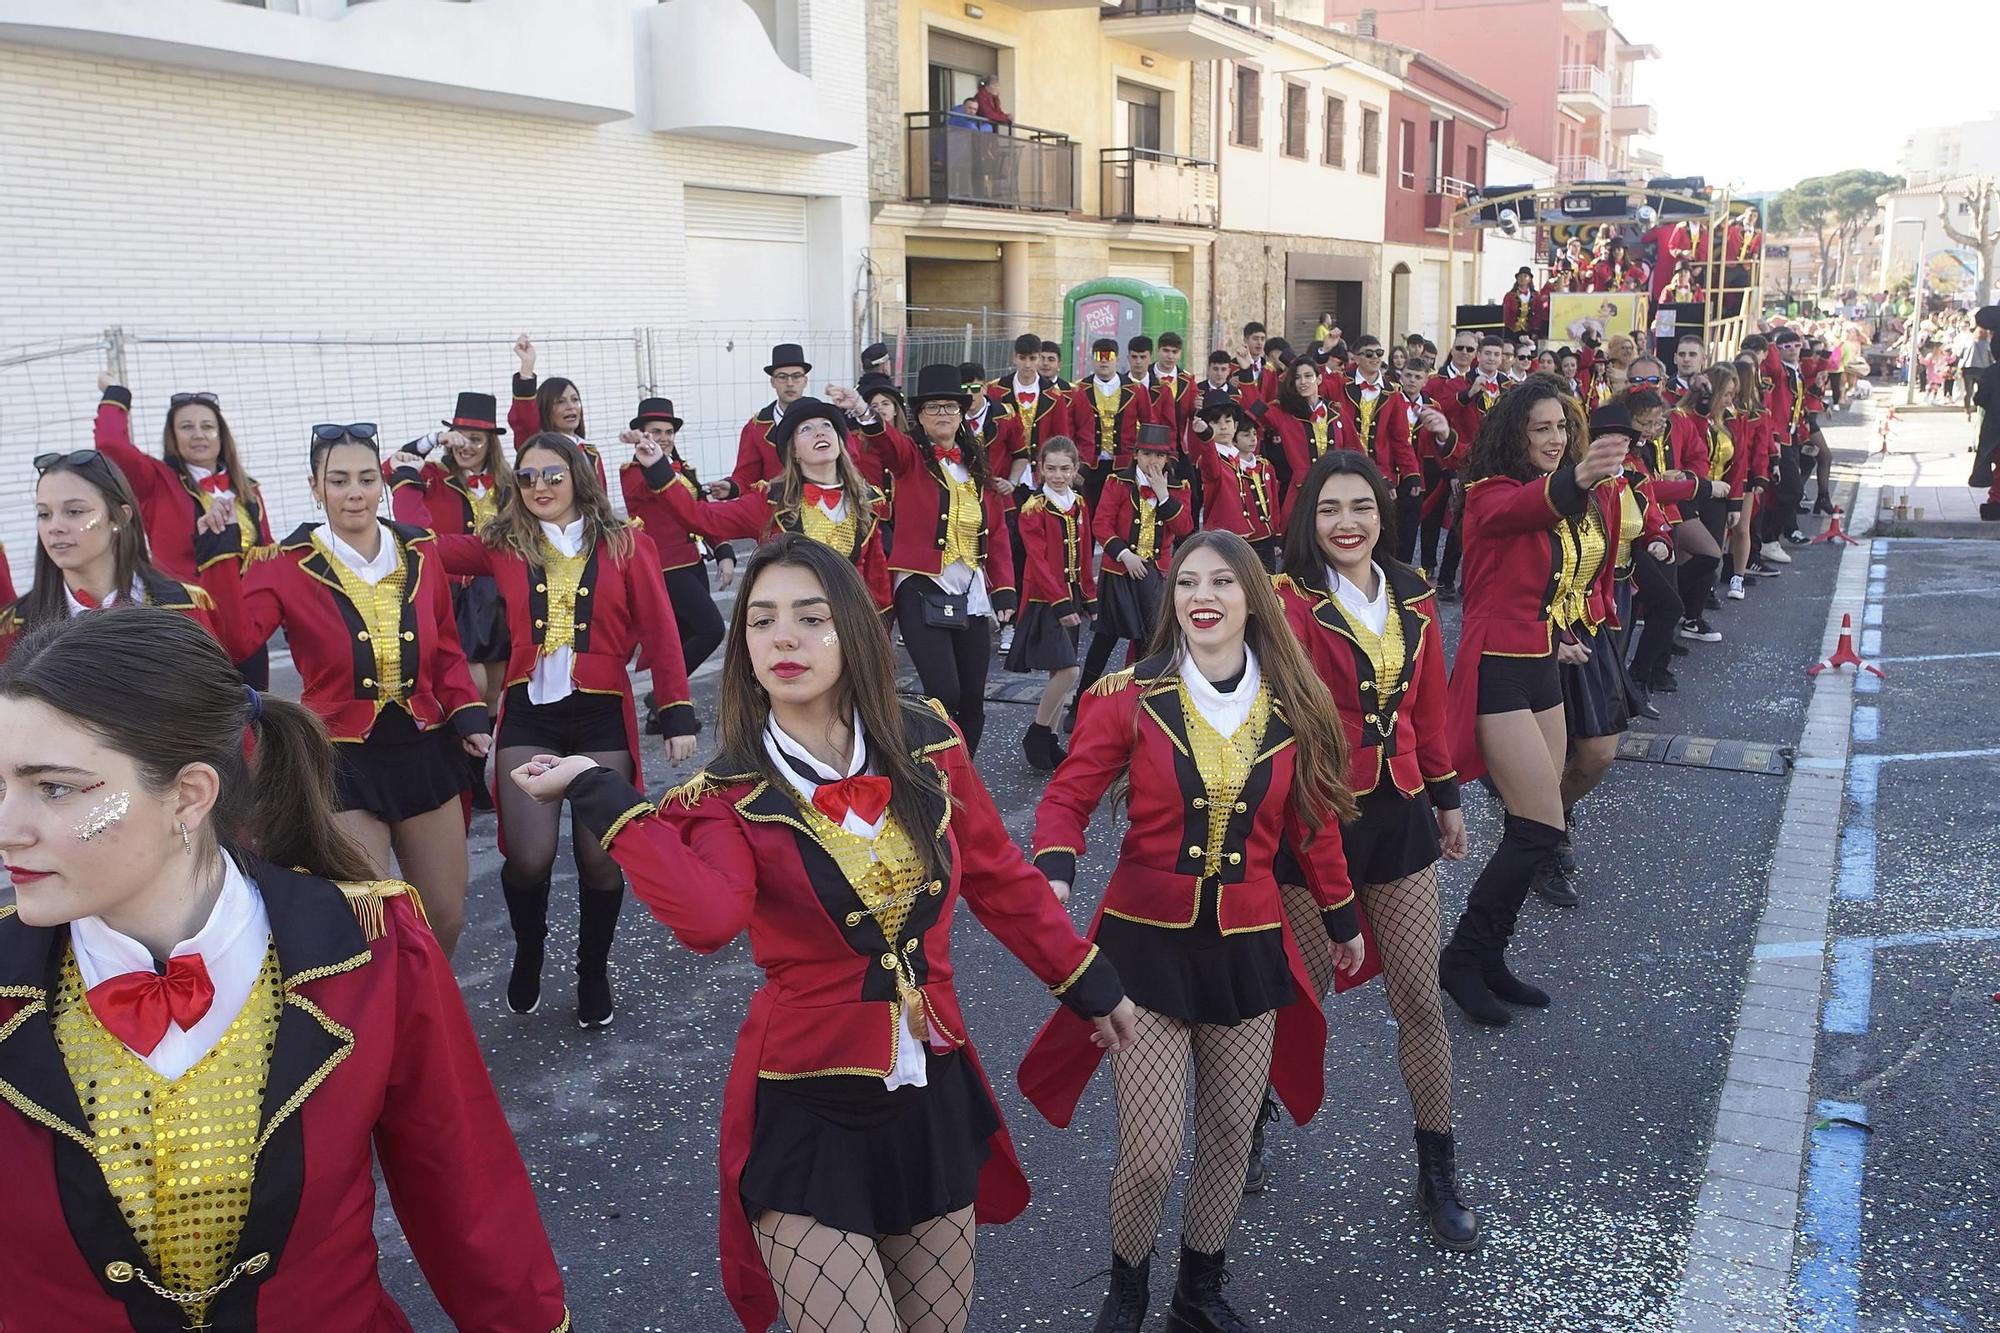 Busca't a les imatges del Carnaval de Sant Antoni de Calonge